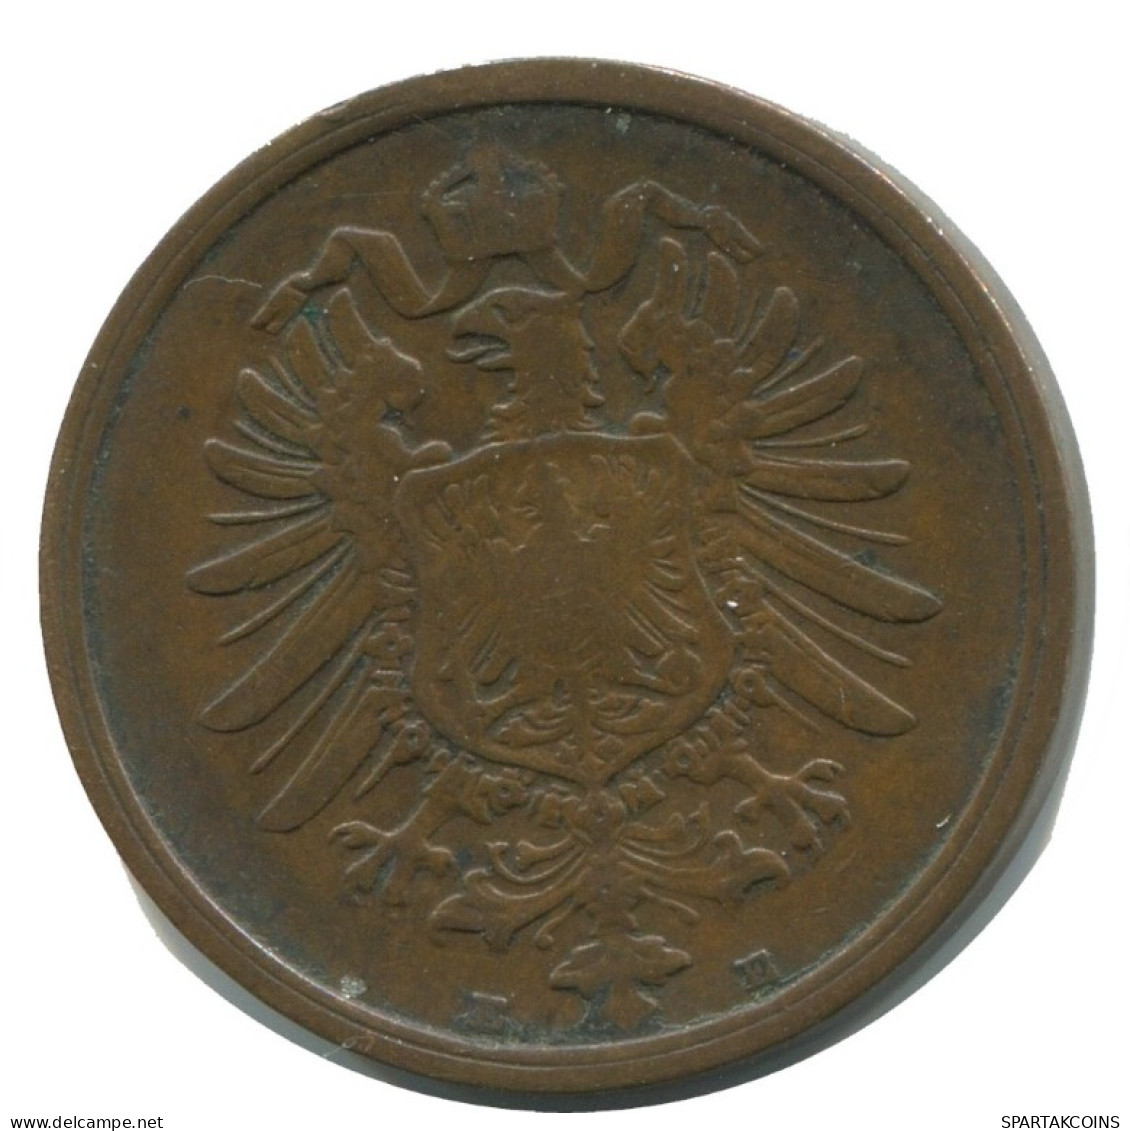 2 PFENNIG 1876 E DEUTSCHLAND Münze GERMANY #AD477.9.D.A - 2 Pfennig